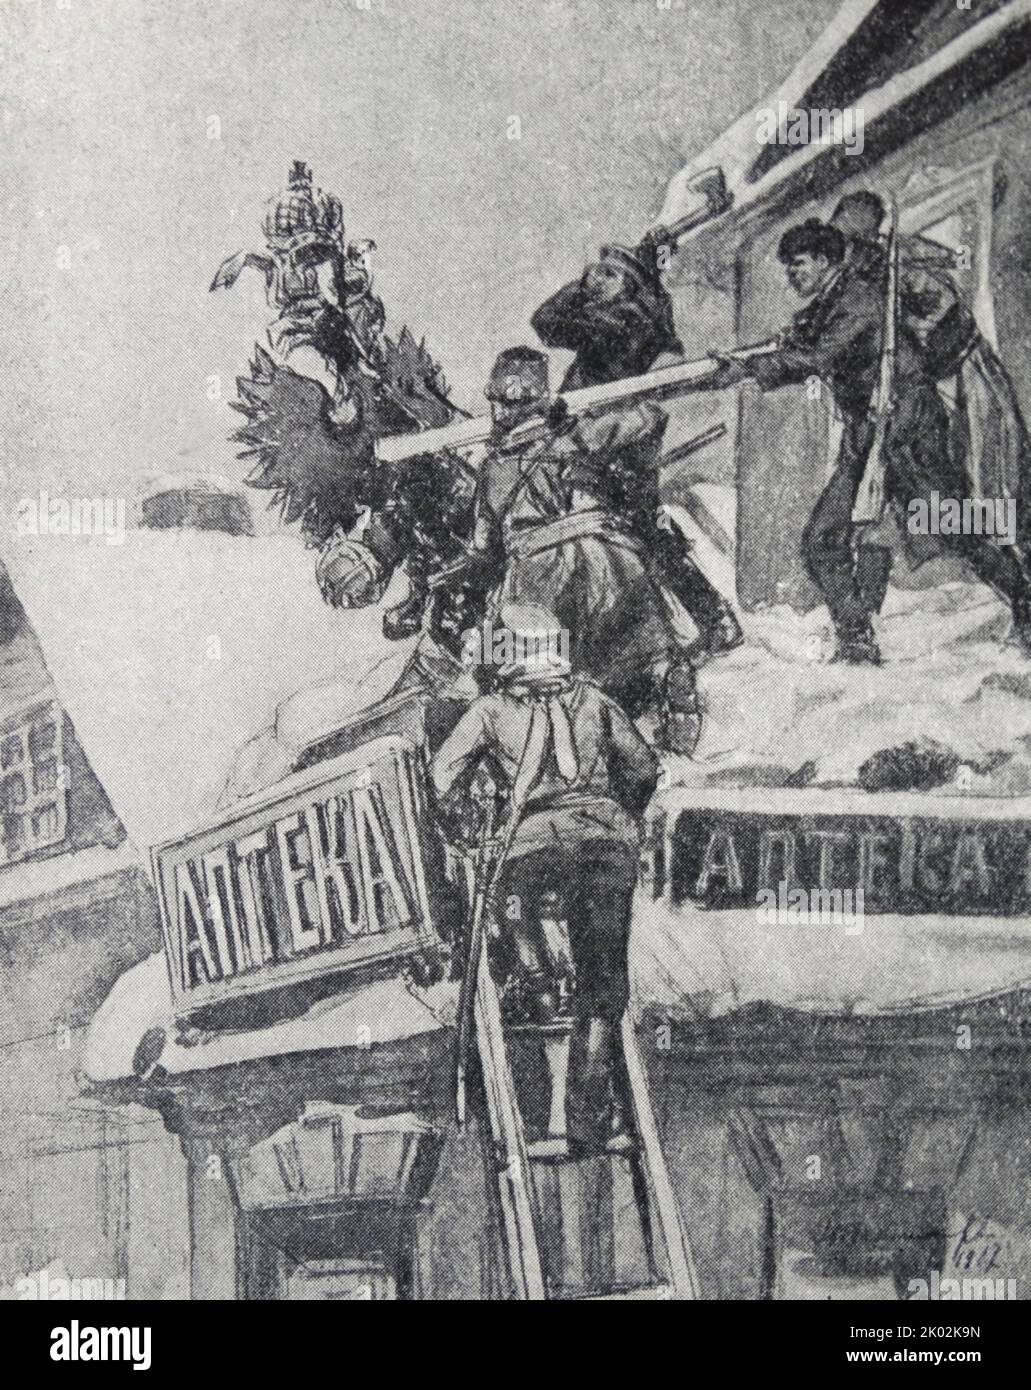 Zerstörung königlicher Embleme. Von I. Vladimirova. 1917 Oktoberrevolution in Russland Stockfoto